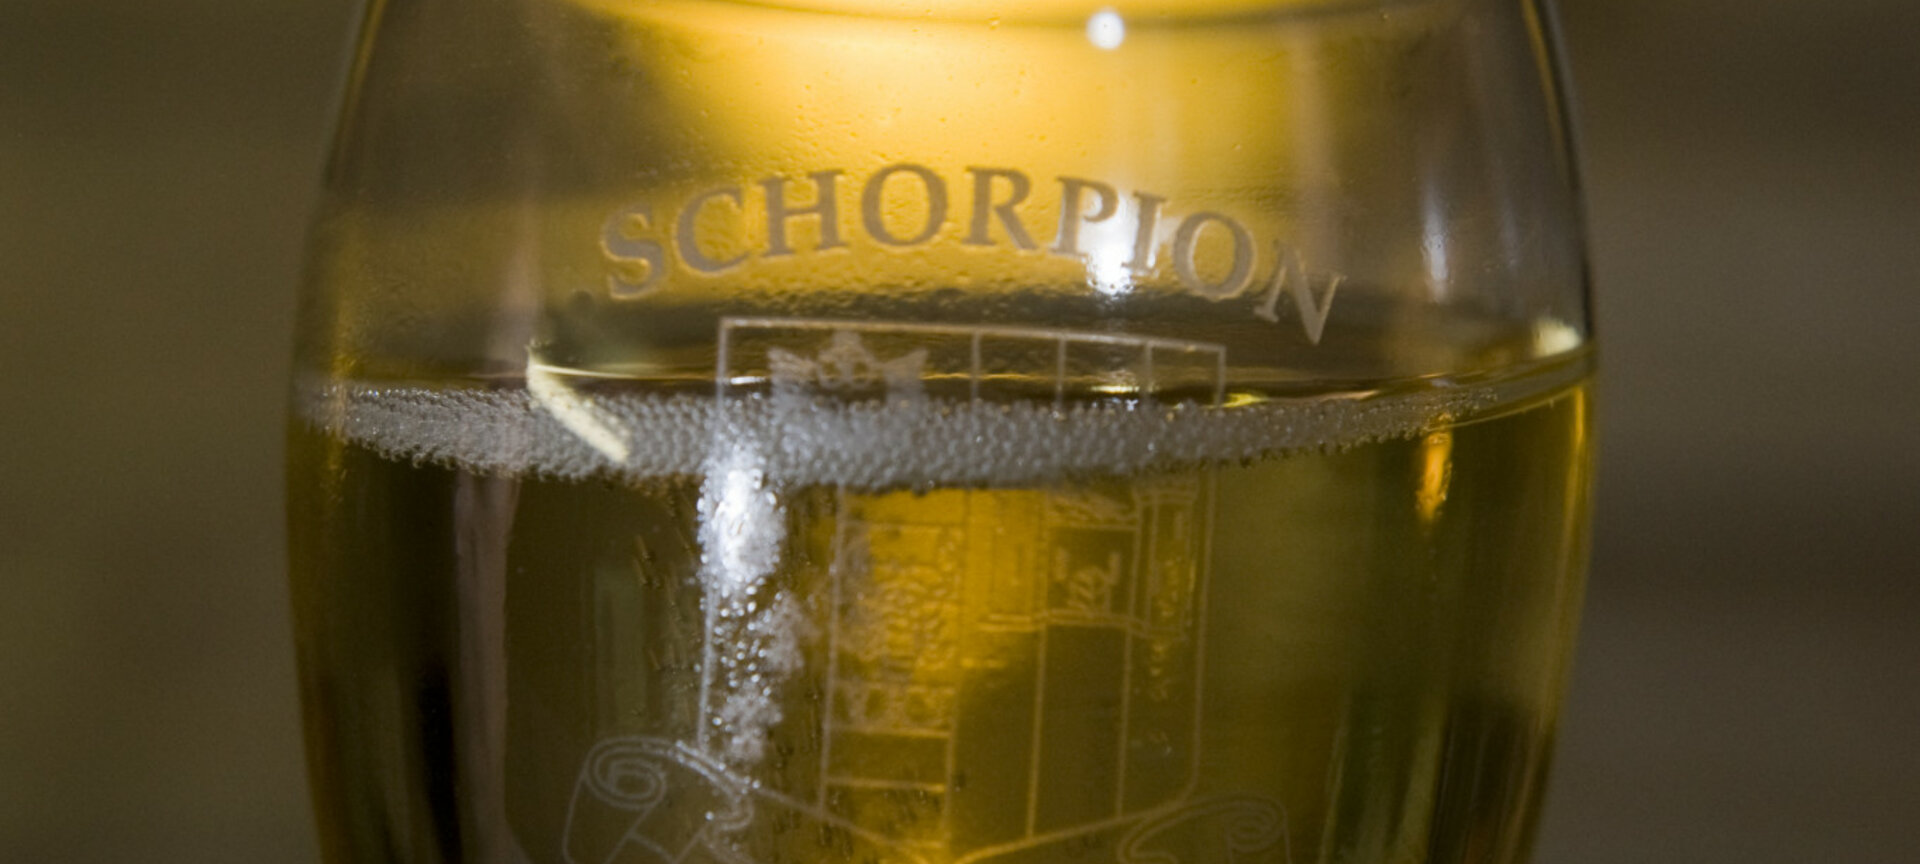 Schorpion Méthode Traditionnelle - de wijn